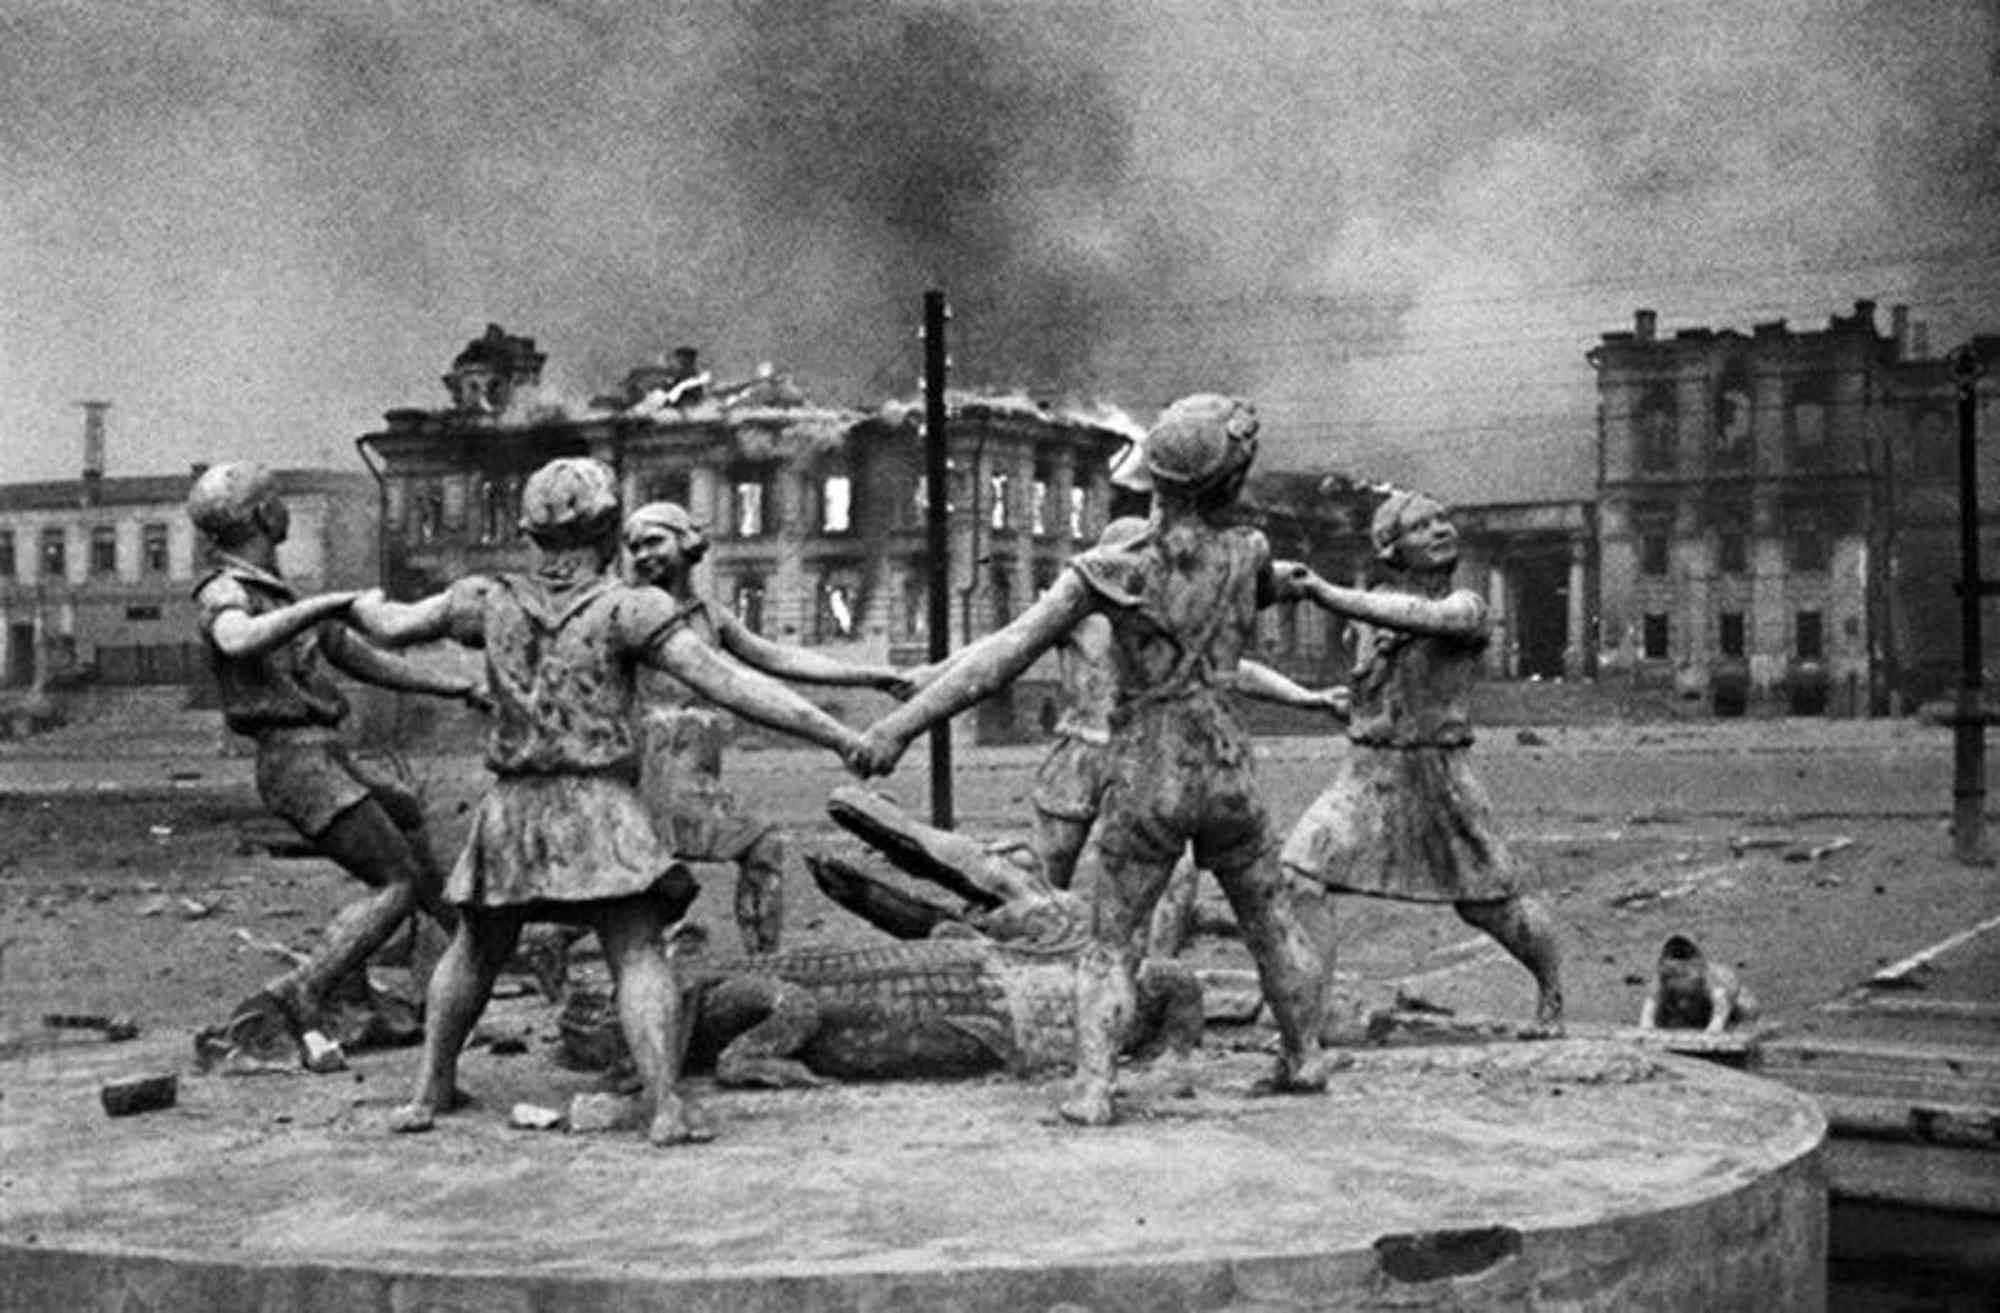 Stalingrado